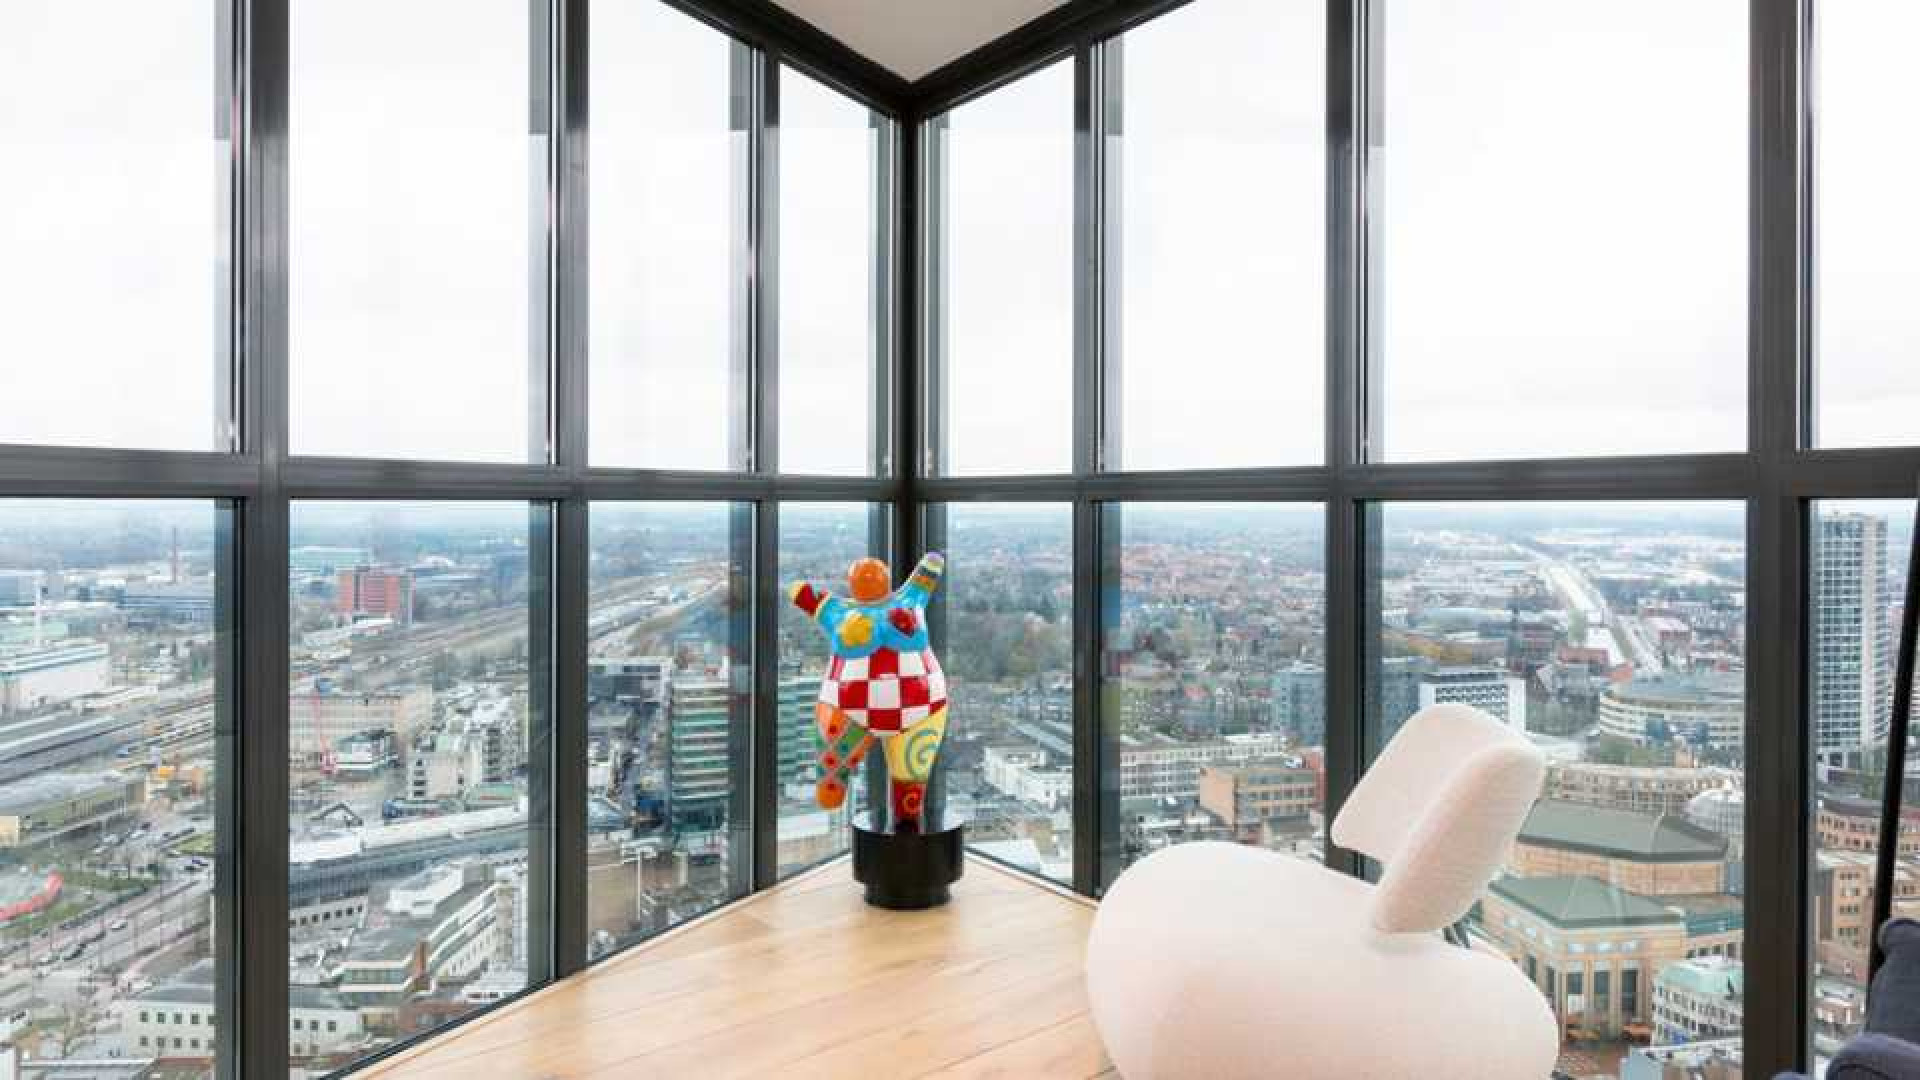 Amanda Krabbe en haar man Harrie Kolen zetten hun luxe penthouse in stille verkoop. Zie foto's 10